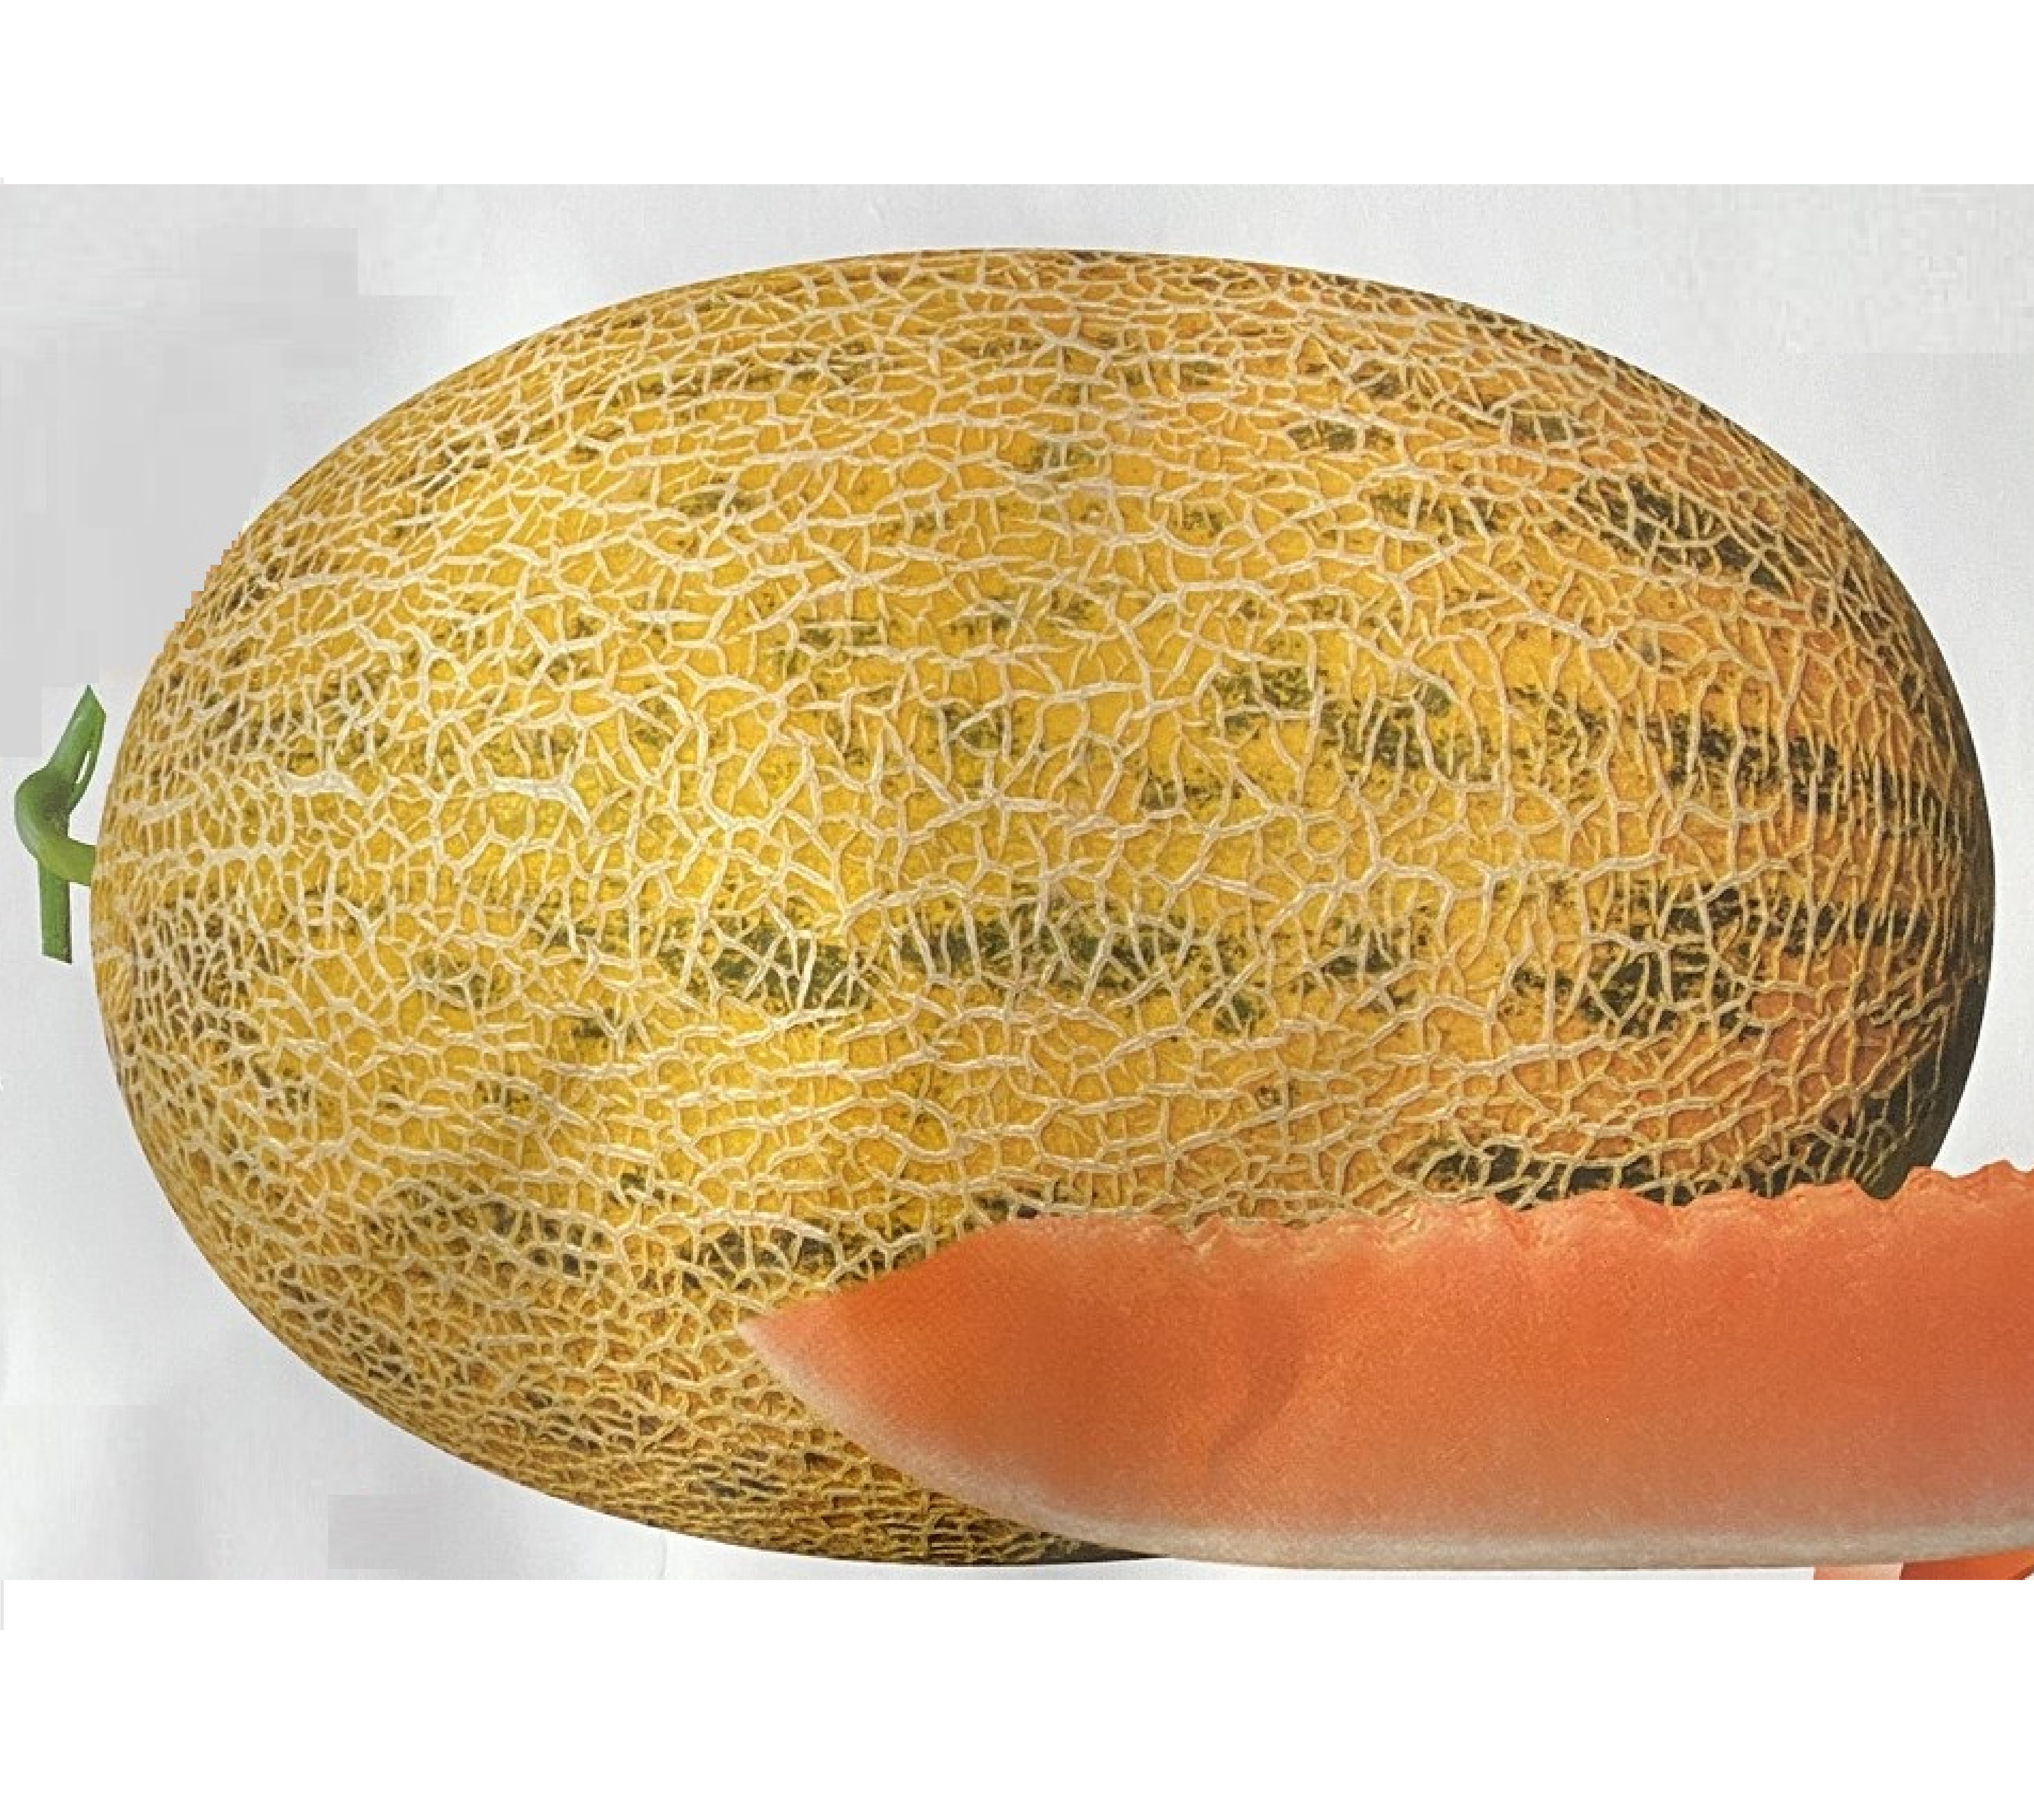 Vysoko kvalitné melónové semená pre veľkoobchod